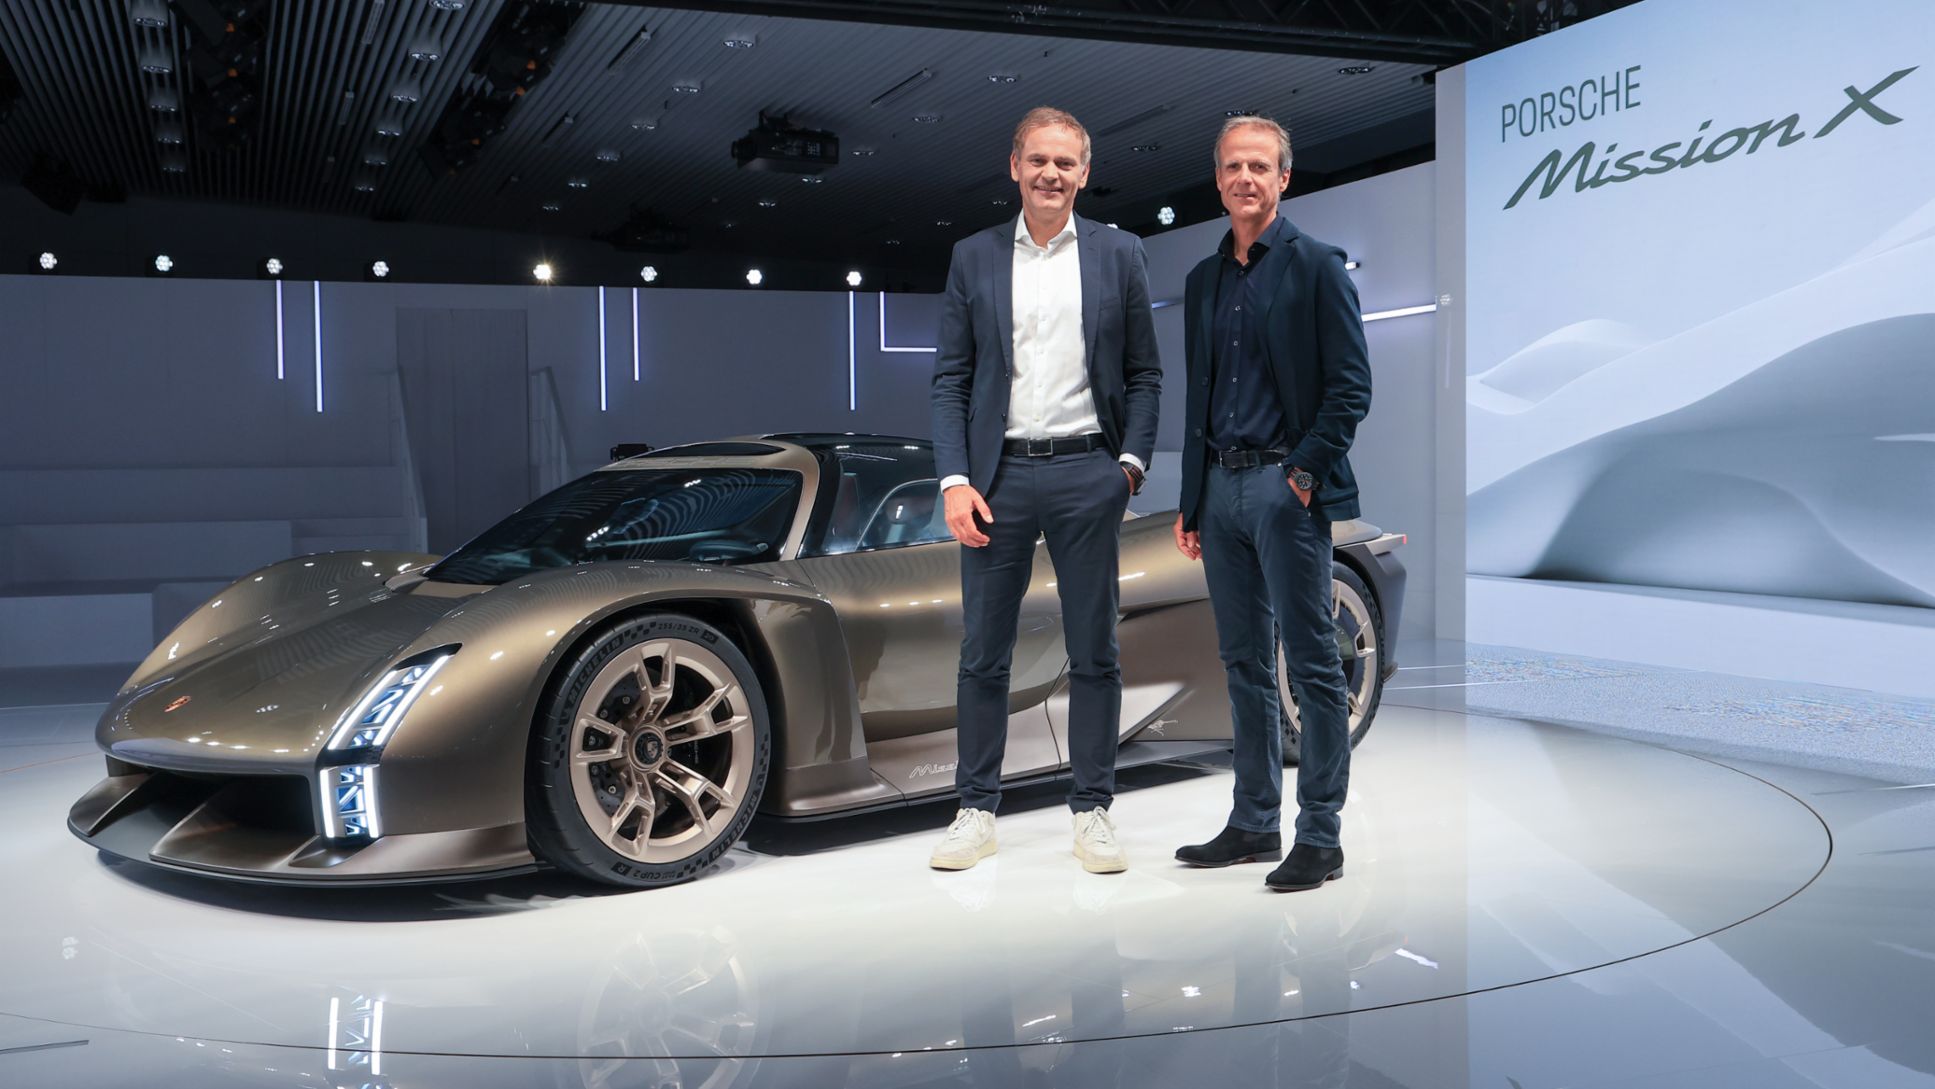 Oliver Blume, Președintele Comitetului Executiv al Porsche AG, și Michael Mauer, Vicepreședinte Style Porsche au prezentat Mission X cu ocazia aniversării „75 de ani de mașini sport Porsche” la Muzeul Porsche.